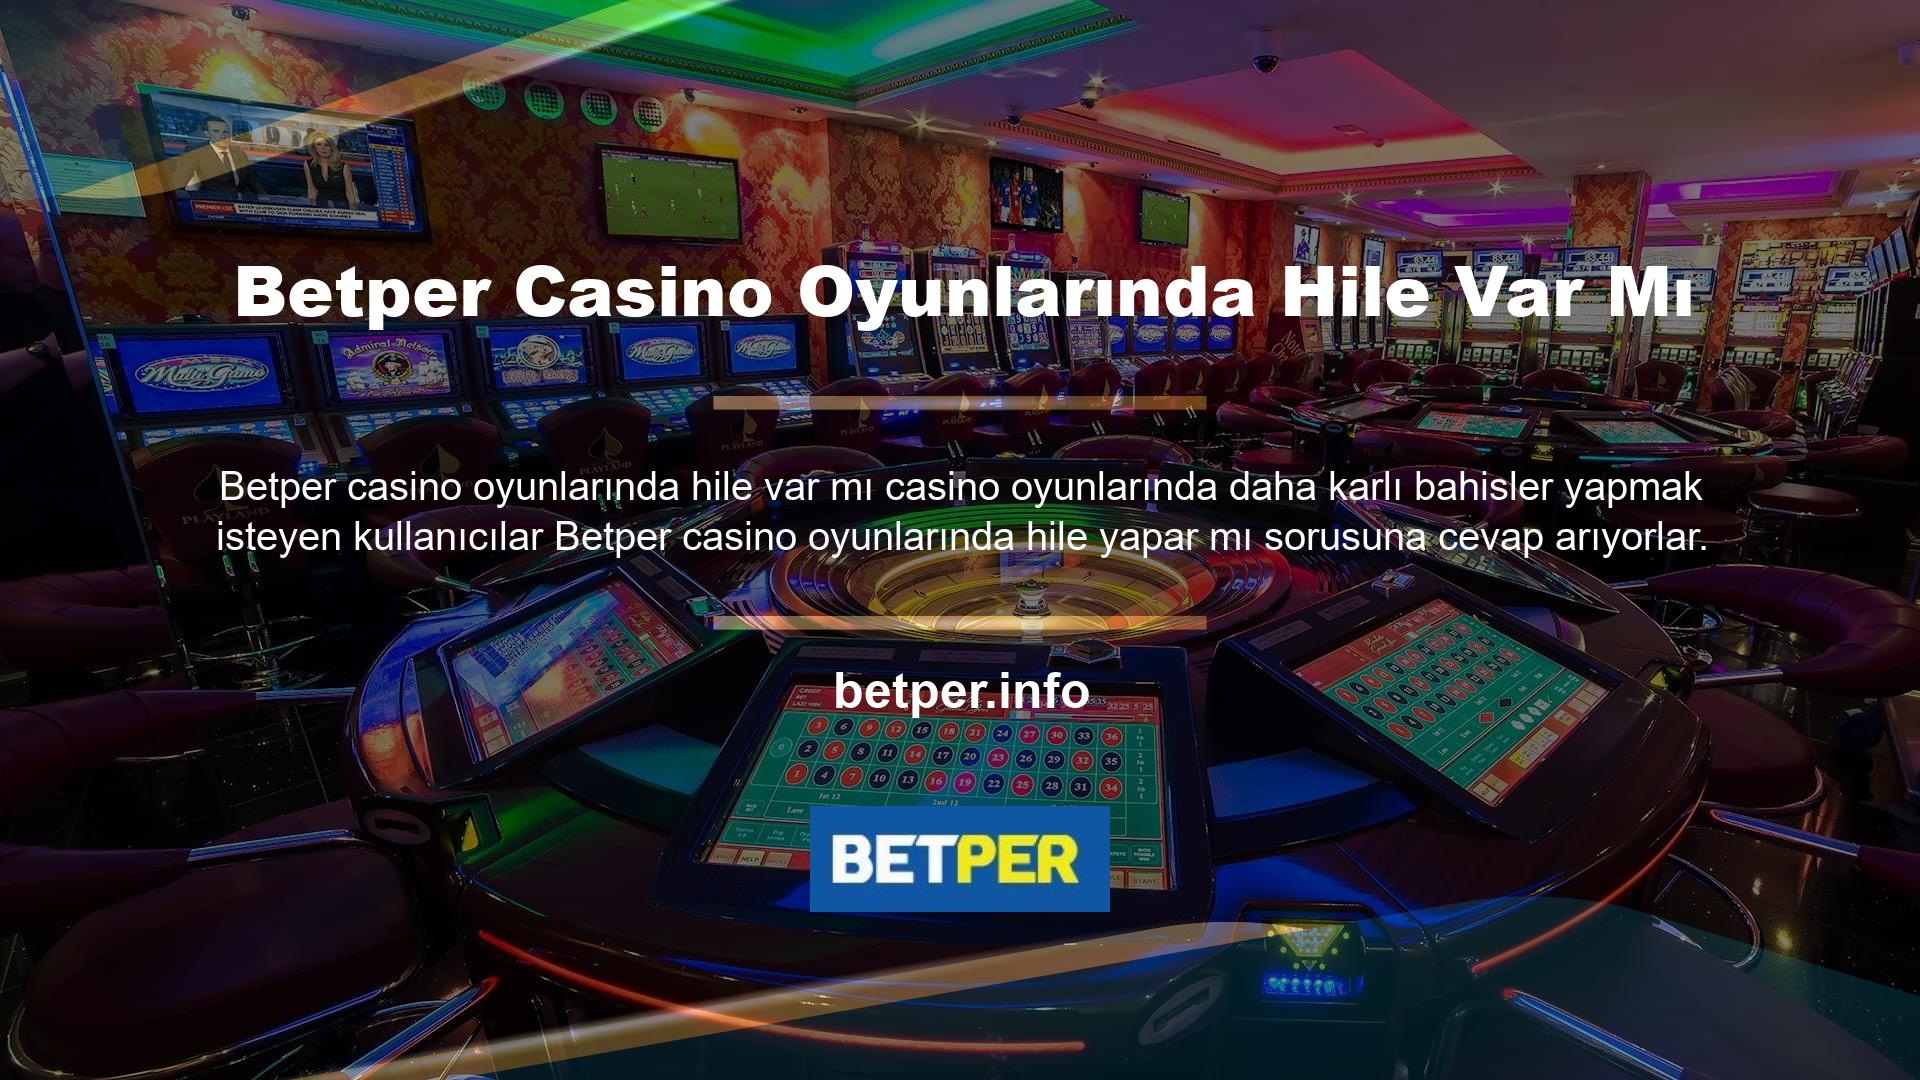 Bu soruyu cevaplamak için Betper casino oyunu, kullanıcılara hile seçeneklerine sahip çeşitli oyun çerçeveleri sunmaktadır